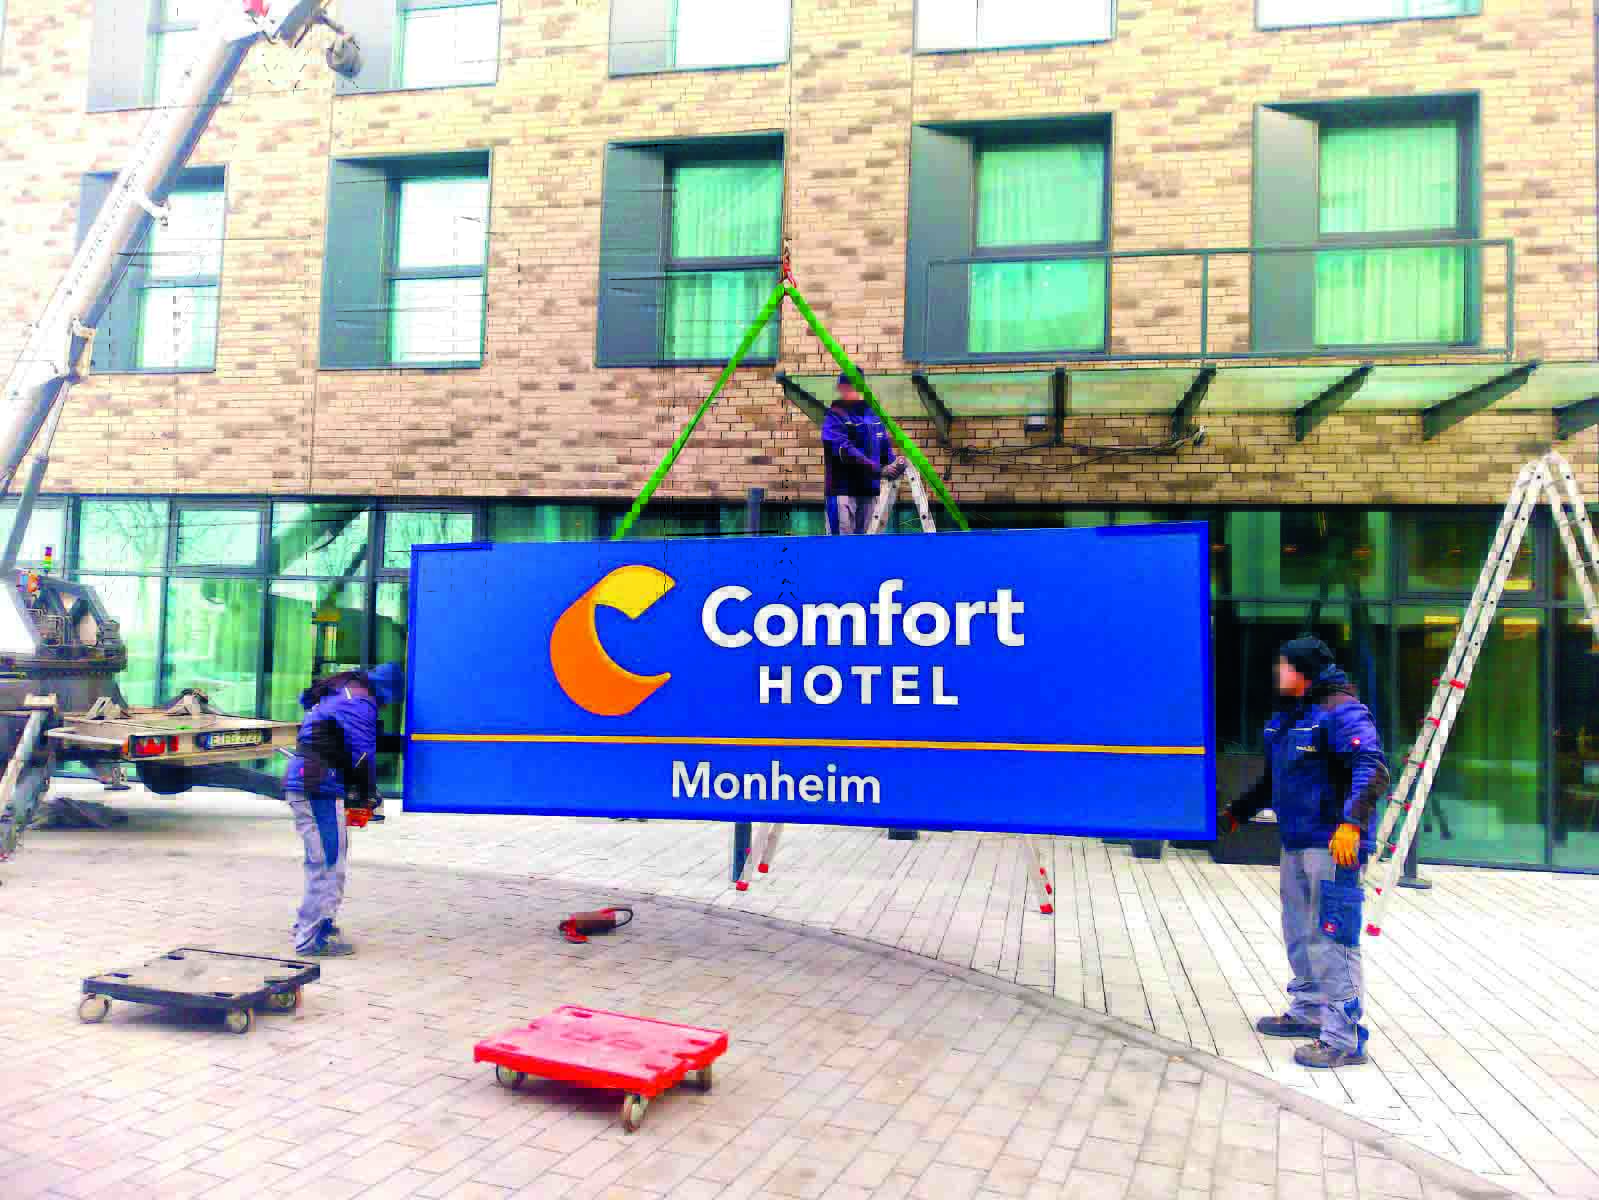 Nuovo logo per Comfort: il lancio in Europa centrale prende il via dal Reno